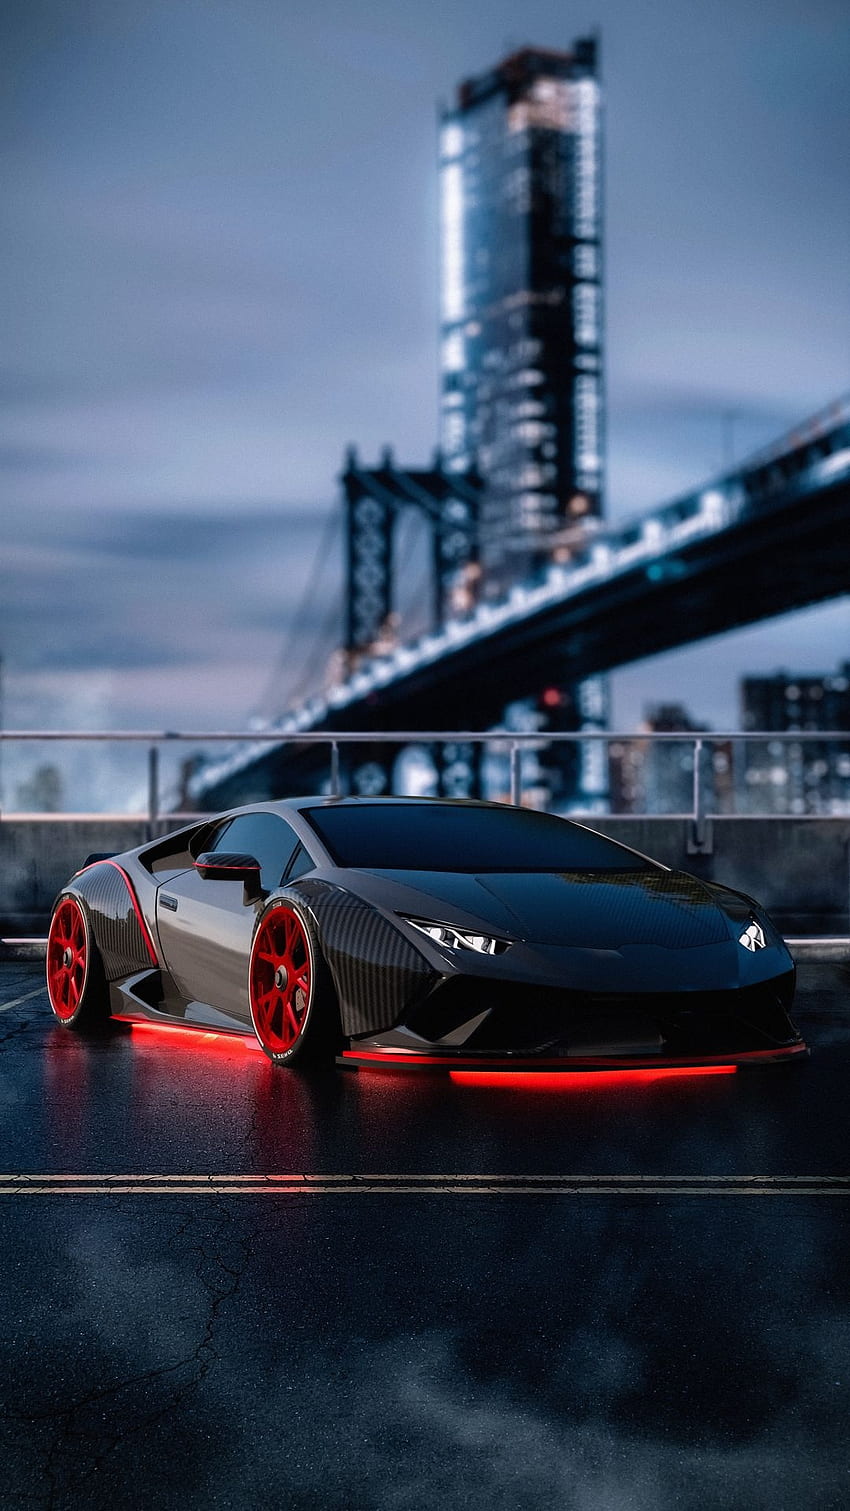 Lamborghini, cepat, mobil, mobil super, mobil tuning, italia, lambo, jembatan wallpaper ponsel HD